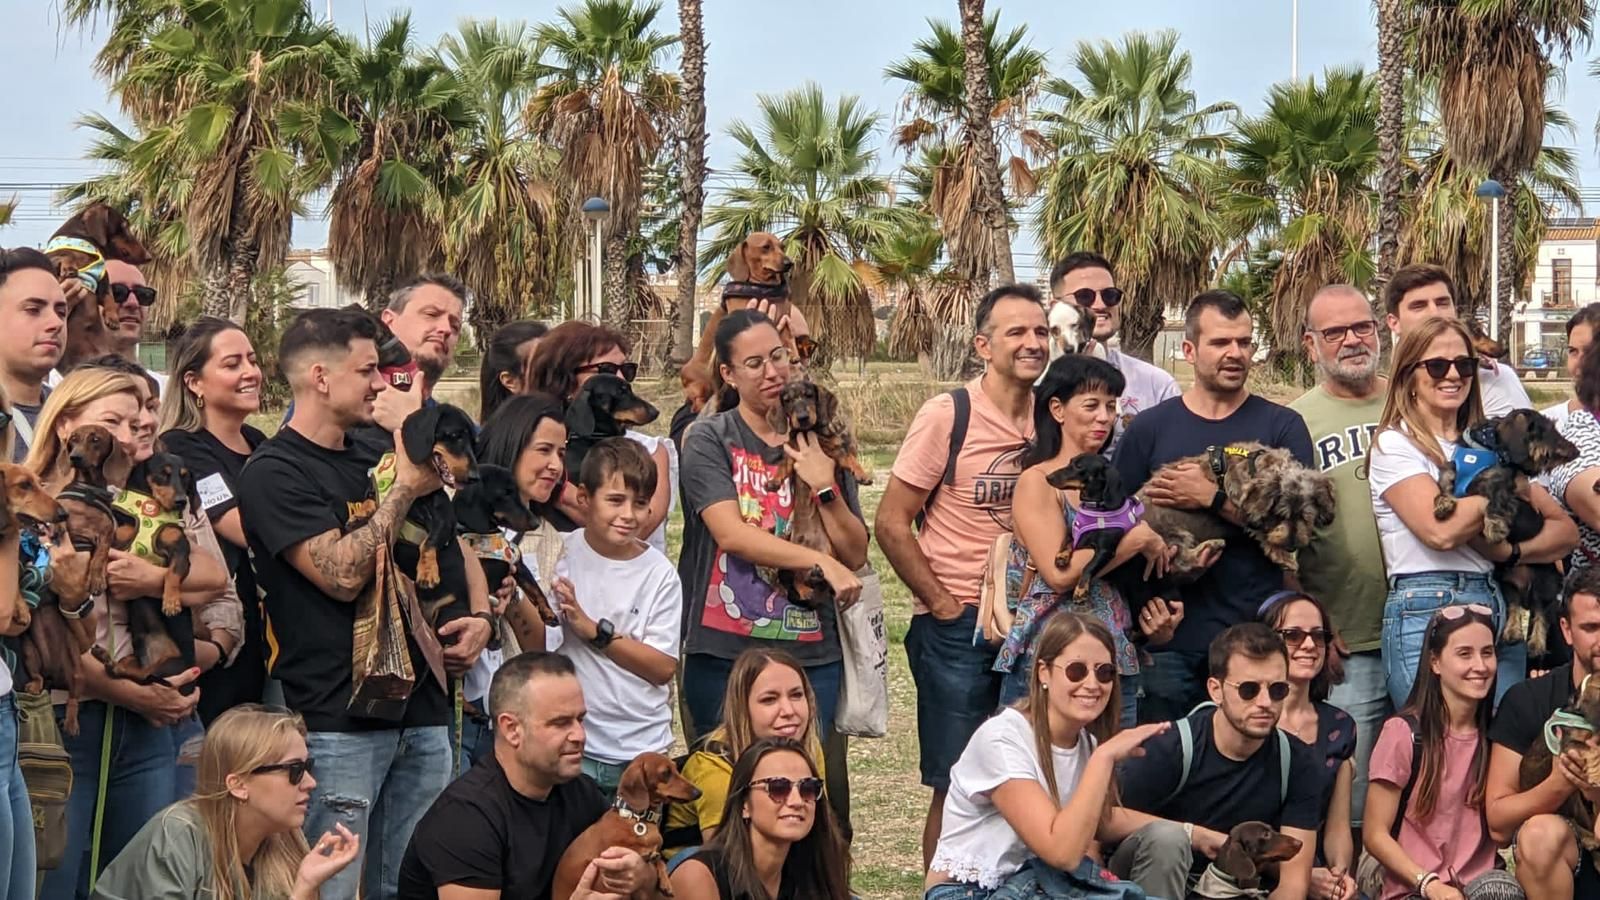 Más de 100 teckels se reúnen en la "Salchiquedada" de Alboraia